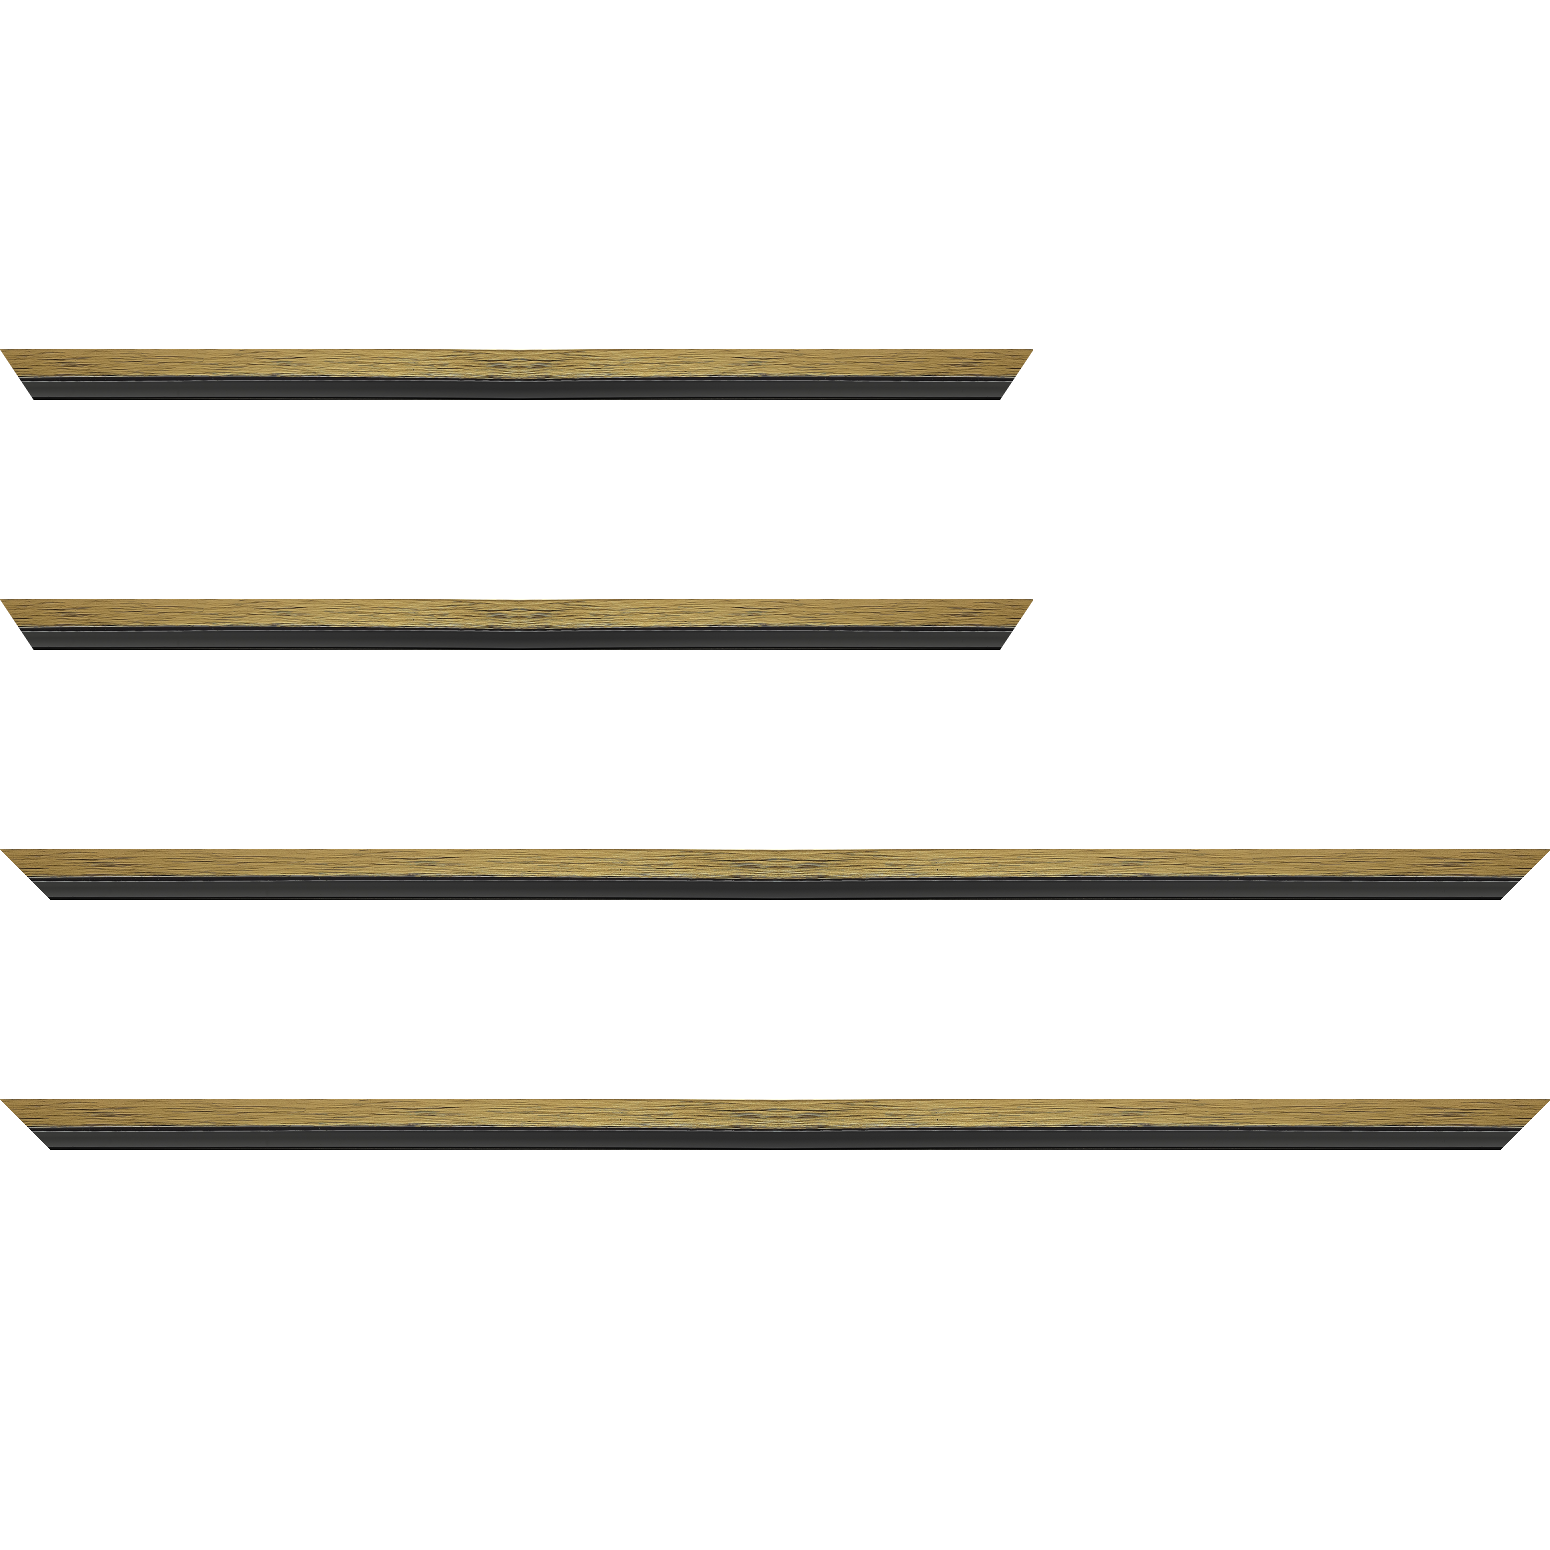 Baguette bois profil plat largeur 1.6cm couleur or contemporain filet noir en retrait de la face du cadre de 6mm assurant un effet très original - 24x30